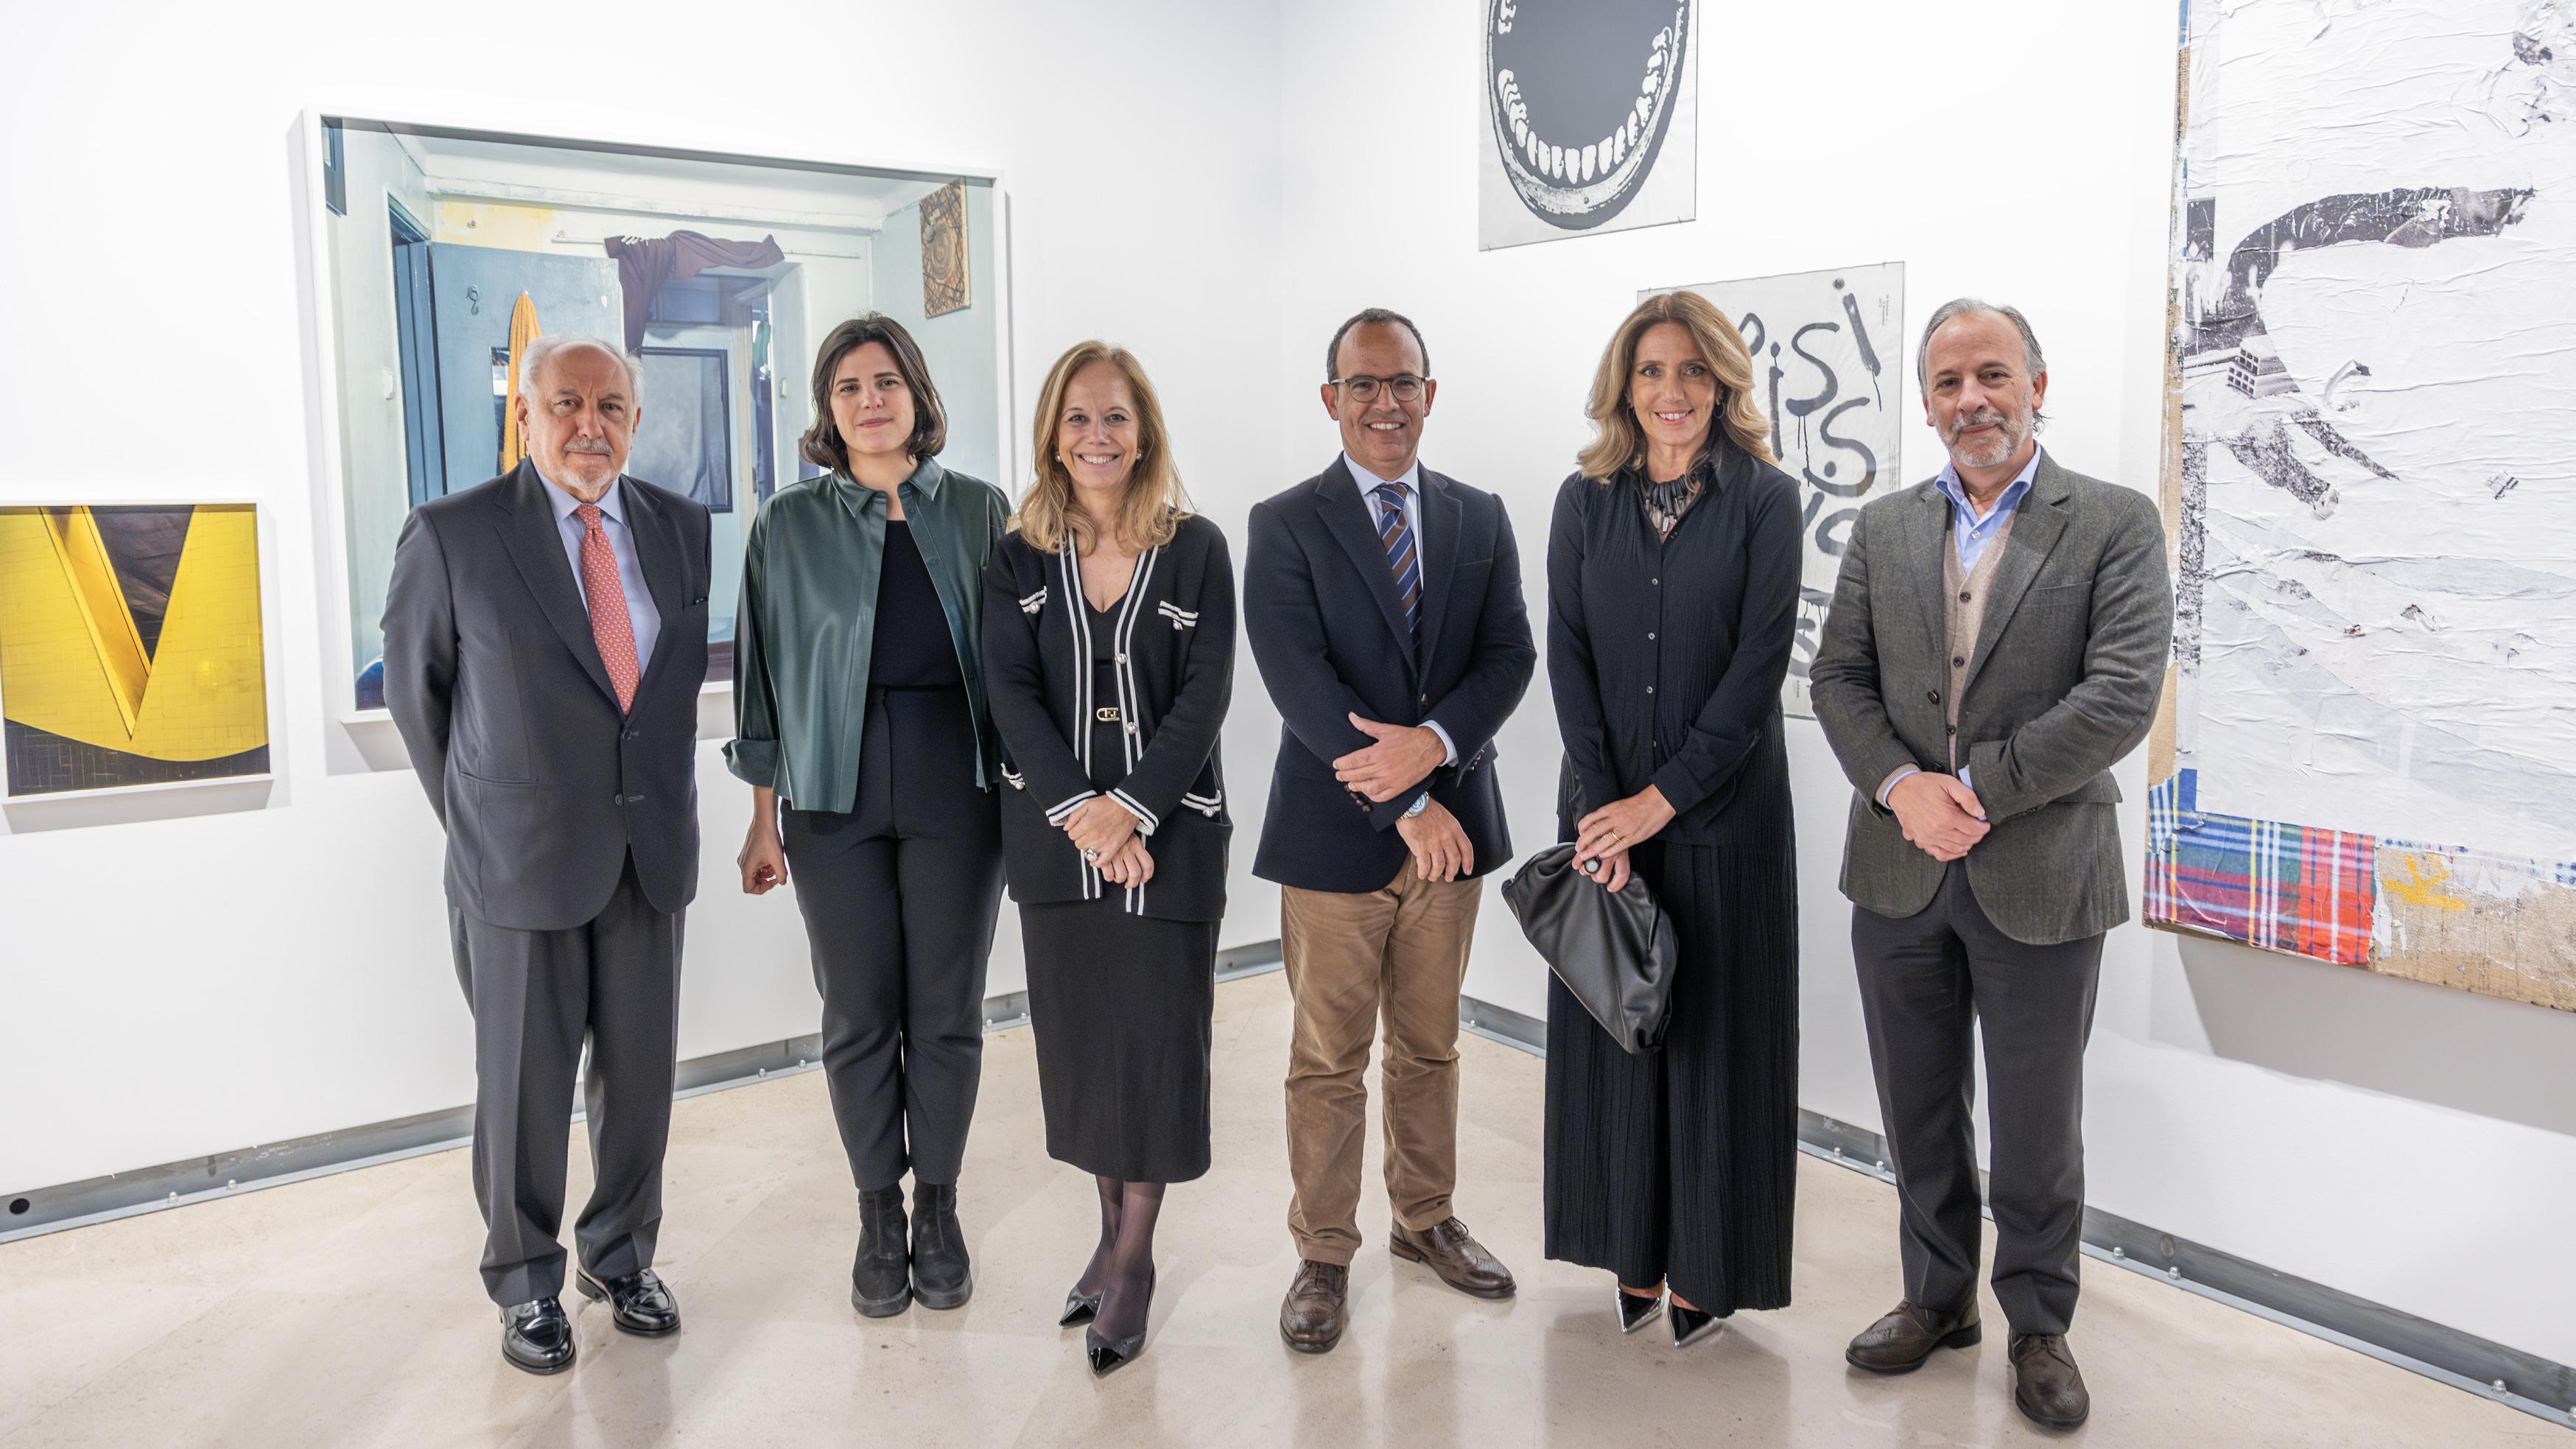 Inauguration of the "Mãos sobre a cidade" exhibition